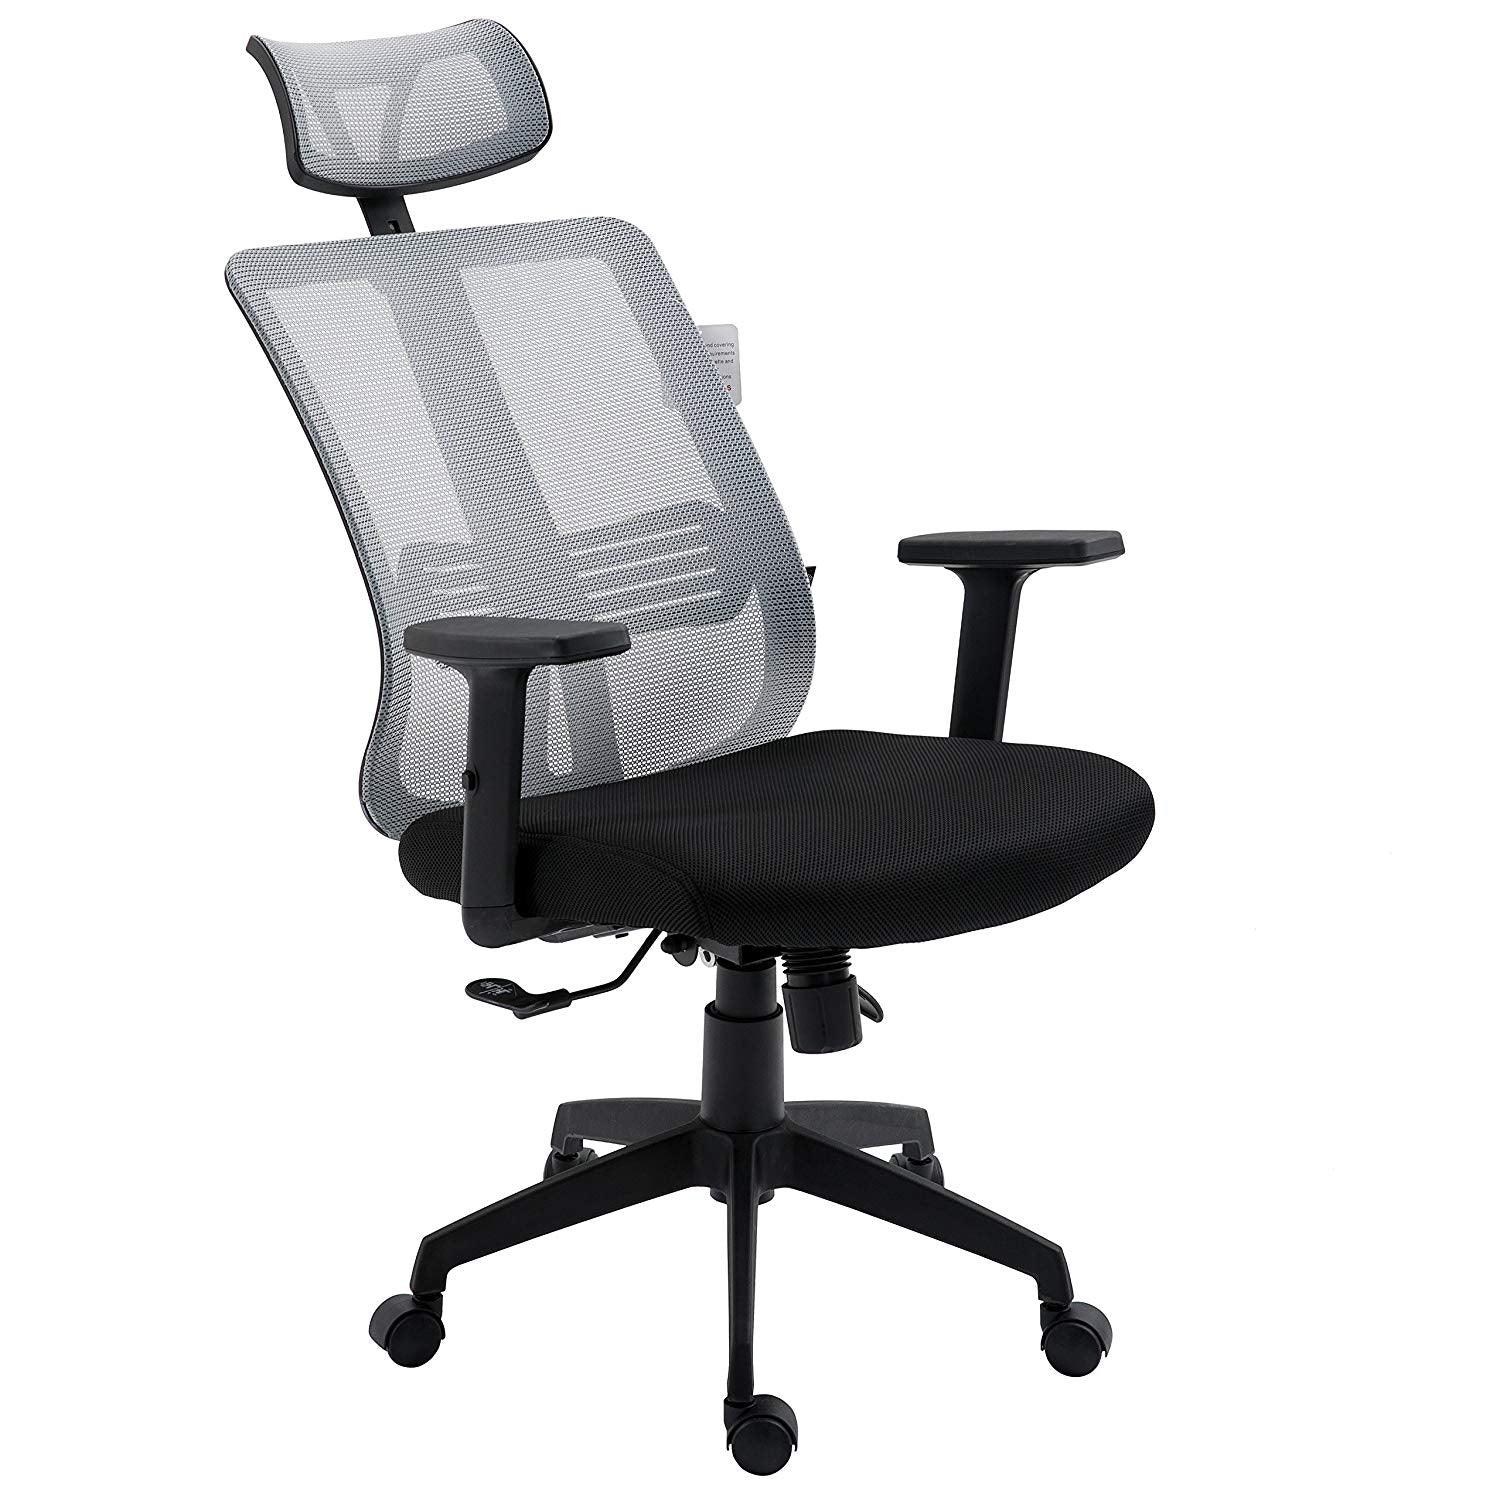 Grey Mesh High Back Executive Office Chair Swivel Desk Chair with Synchro-Tilt, Adjustable Armrest & Headrest